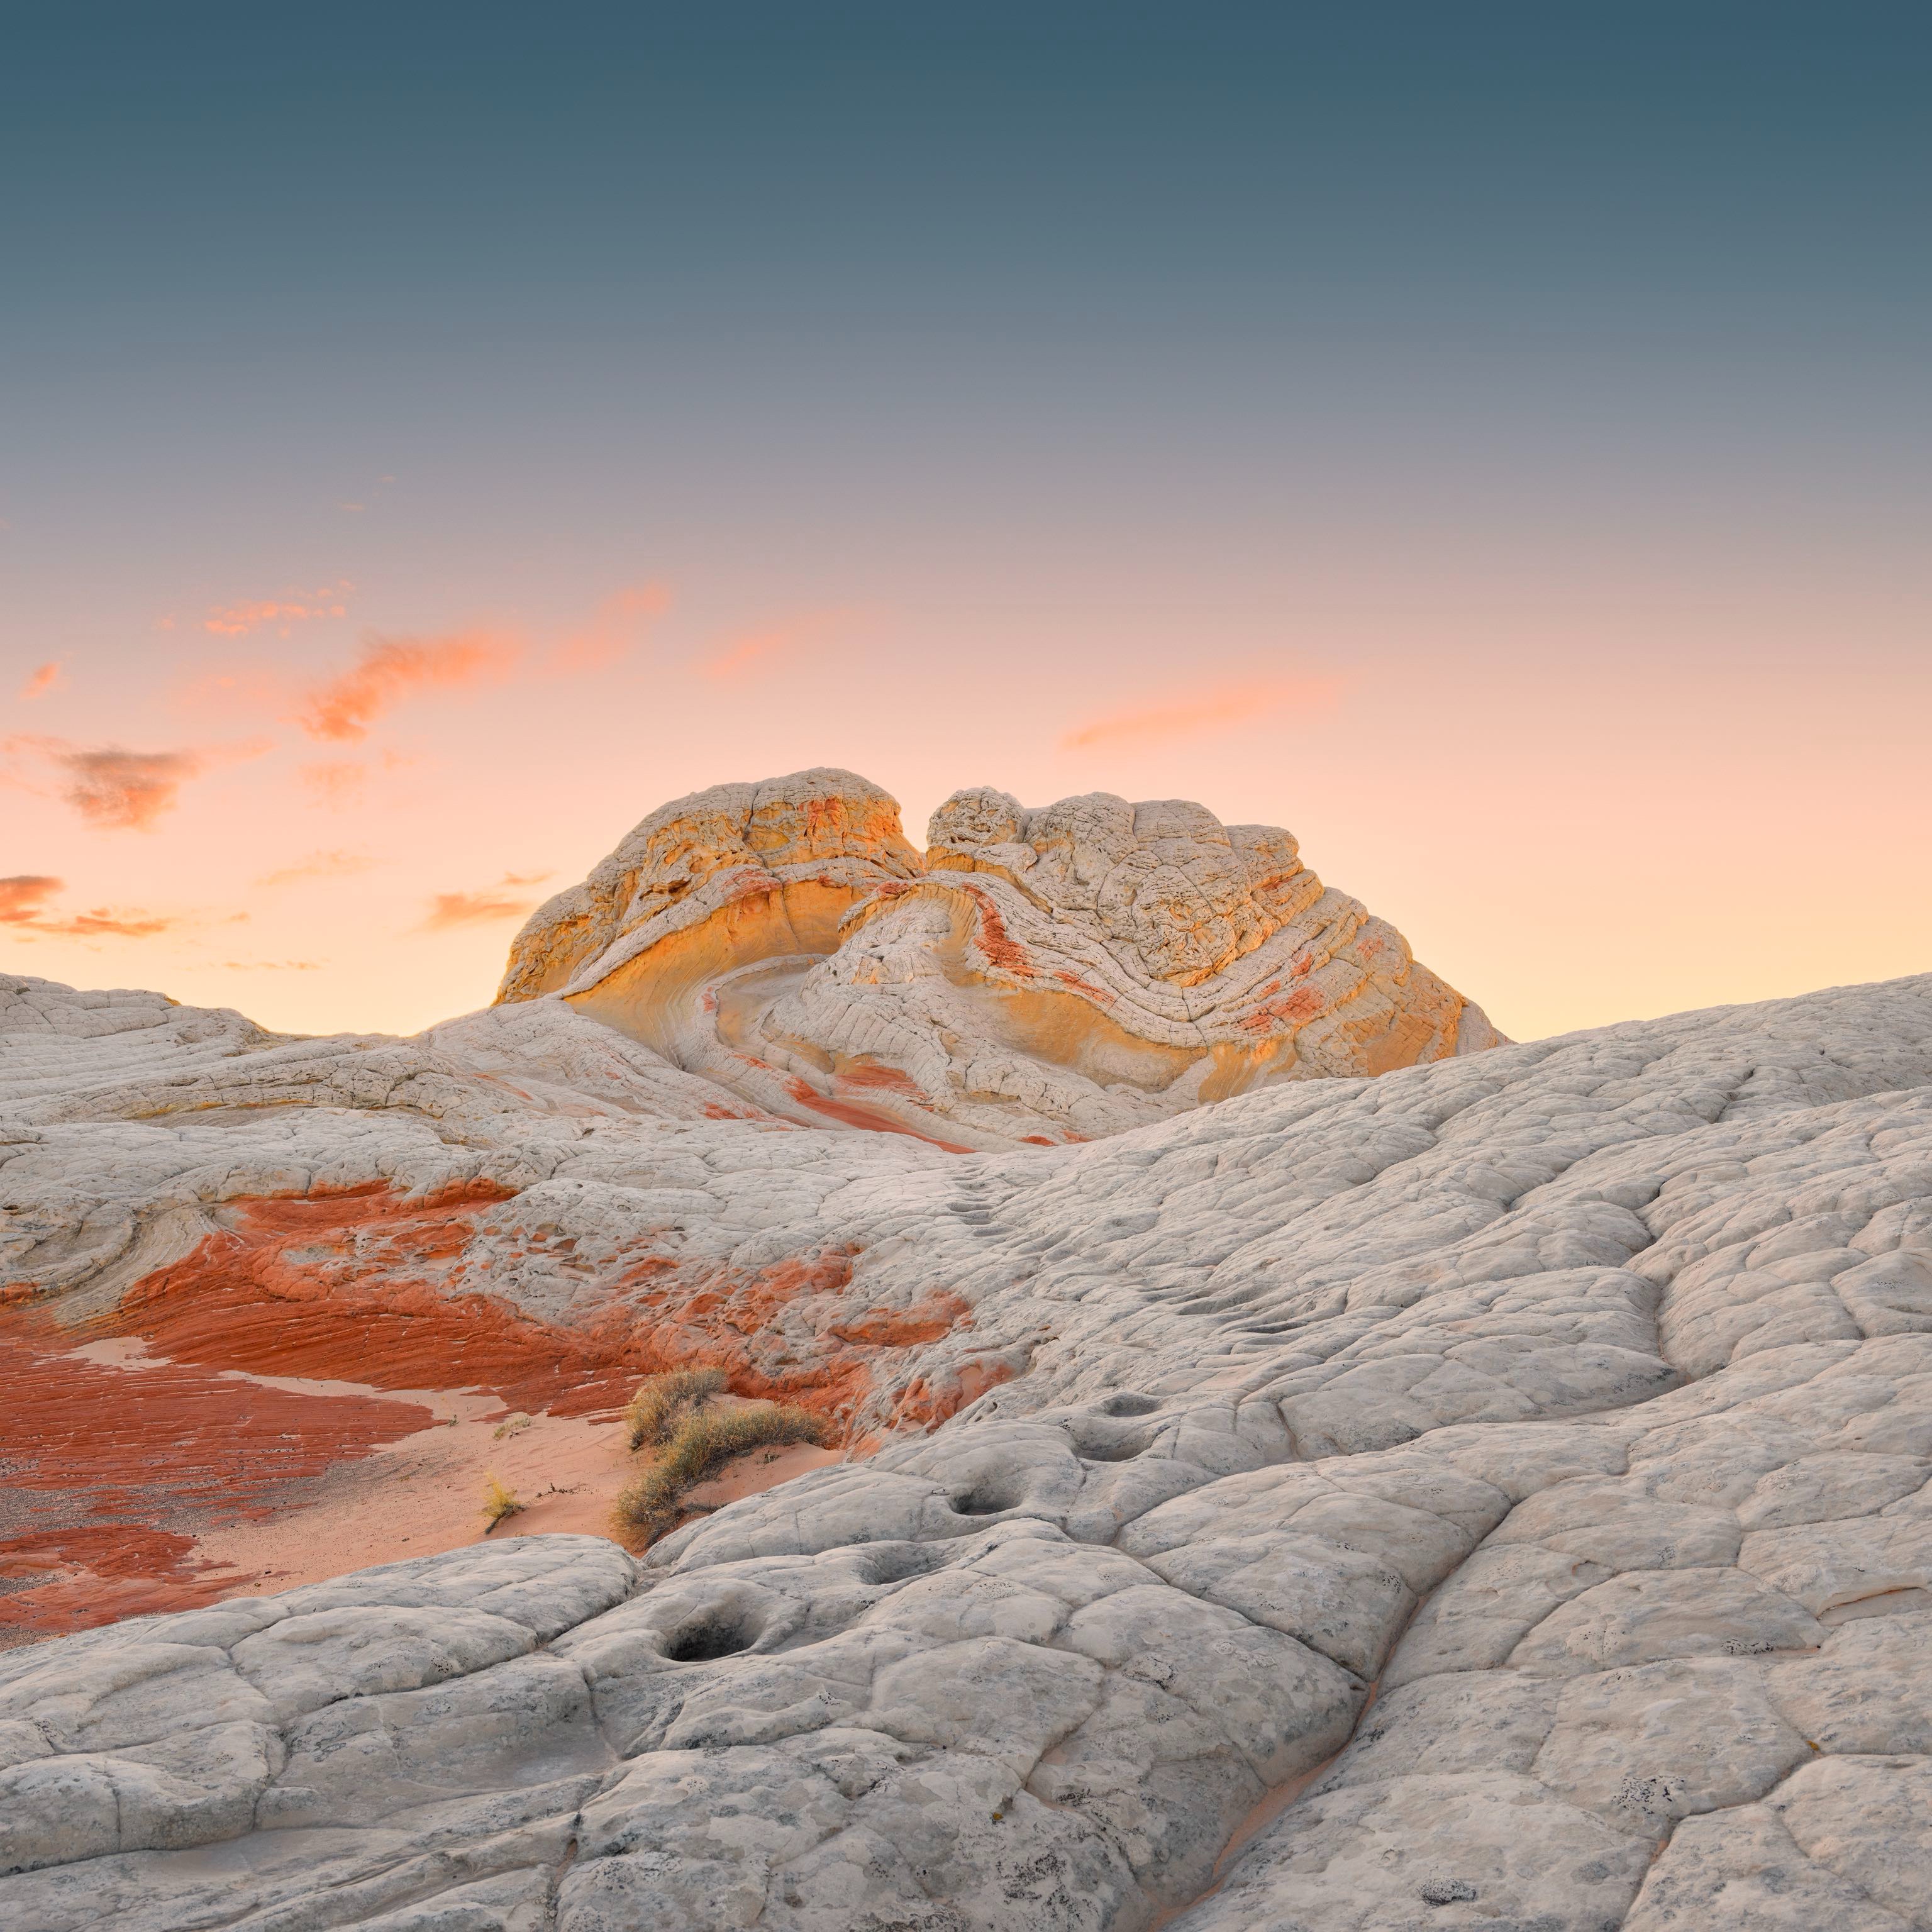 IOS 14.2 desert photos: Bạn có muốn thưởng thức những bức ảnh chất lượng cao về sa mạc nhưng không đi du lịch? Vậy thì bộ sưu tập hình ảnh sa mạc trên IOS 14.2 chắc chắn sẽ là điều bạn cần. Hãy xem ngay những nguyên cảnh đẹp, tuyệt vời và đầy màu sắc trong ảnh bằng cách nhấp vào hình.